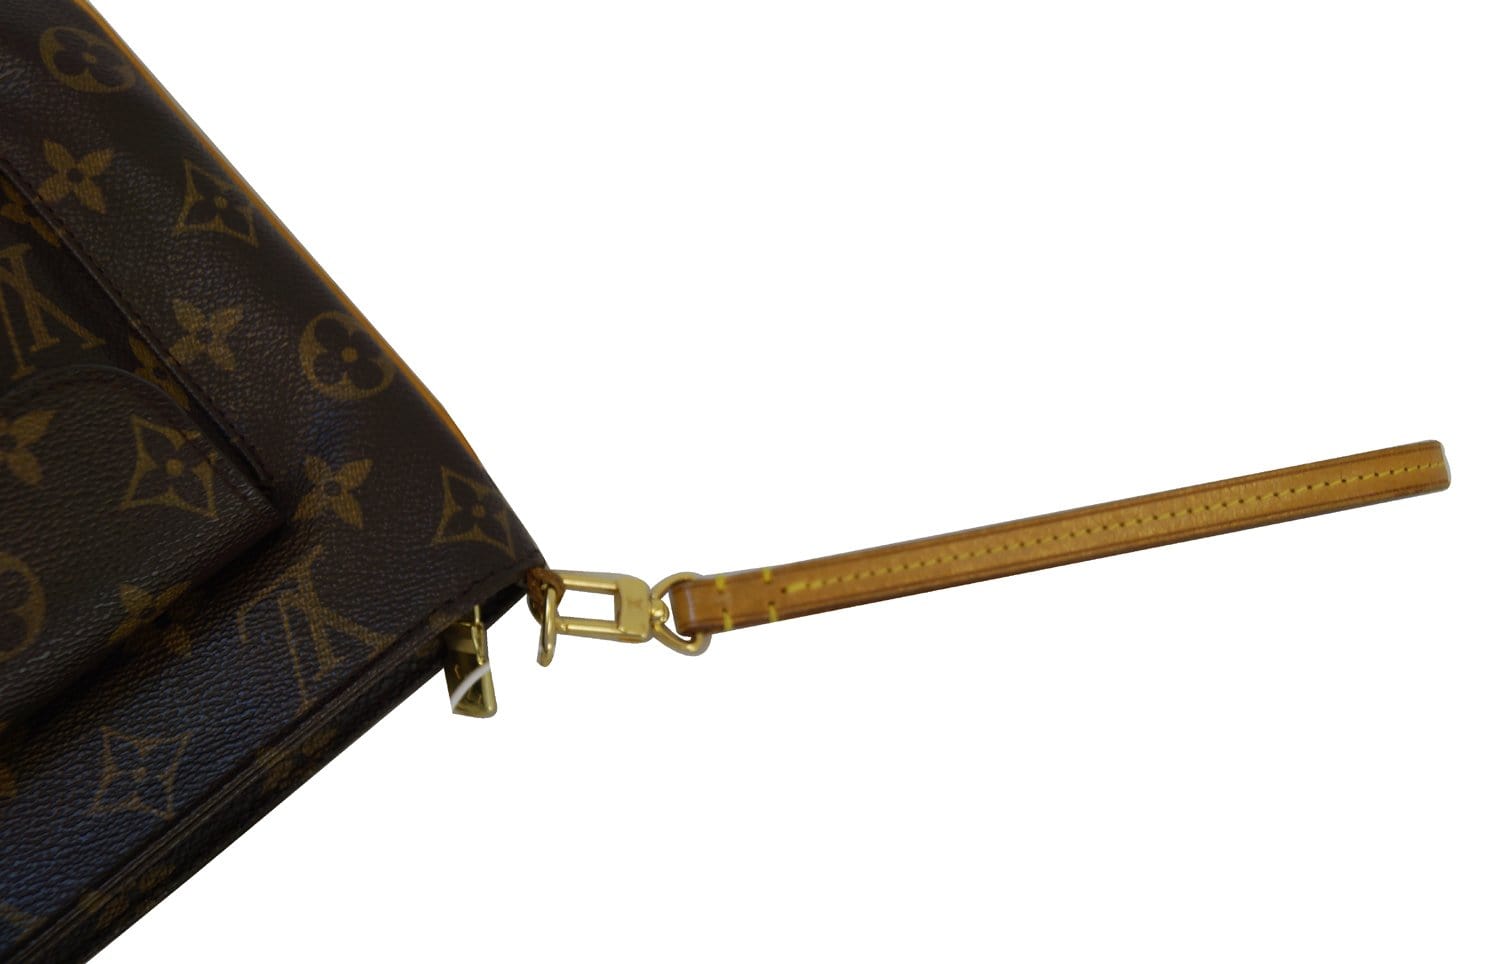 Brown Louis Vuitton Monogram Partition Clutch Bag – Designer Revival